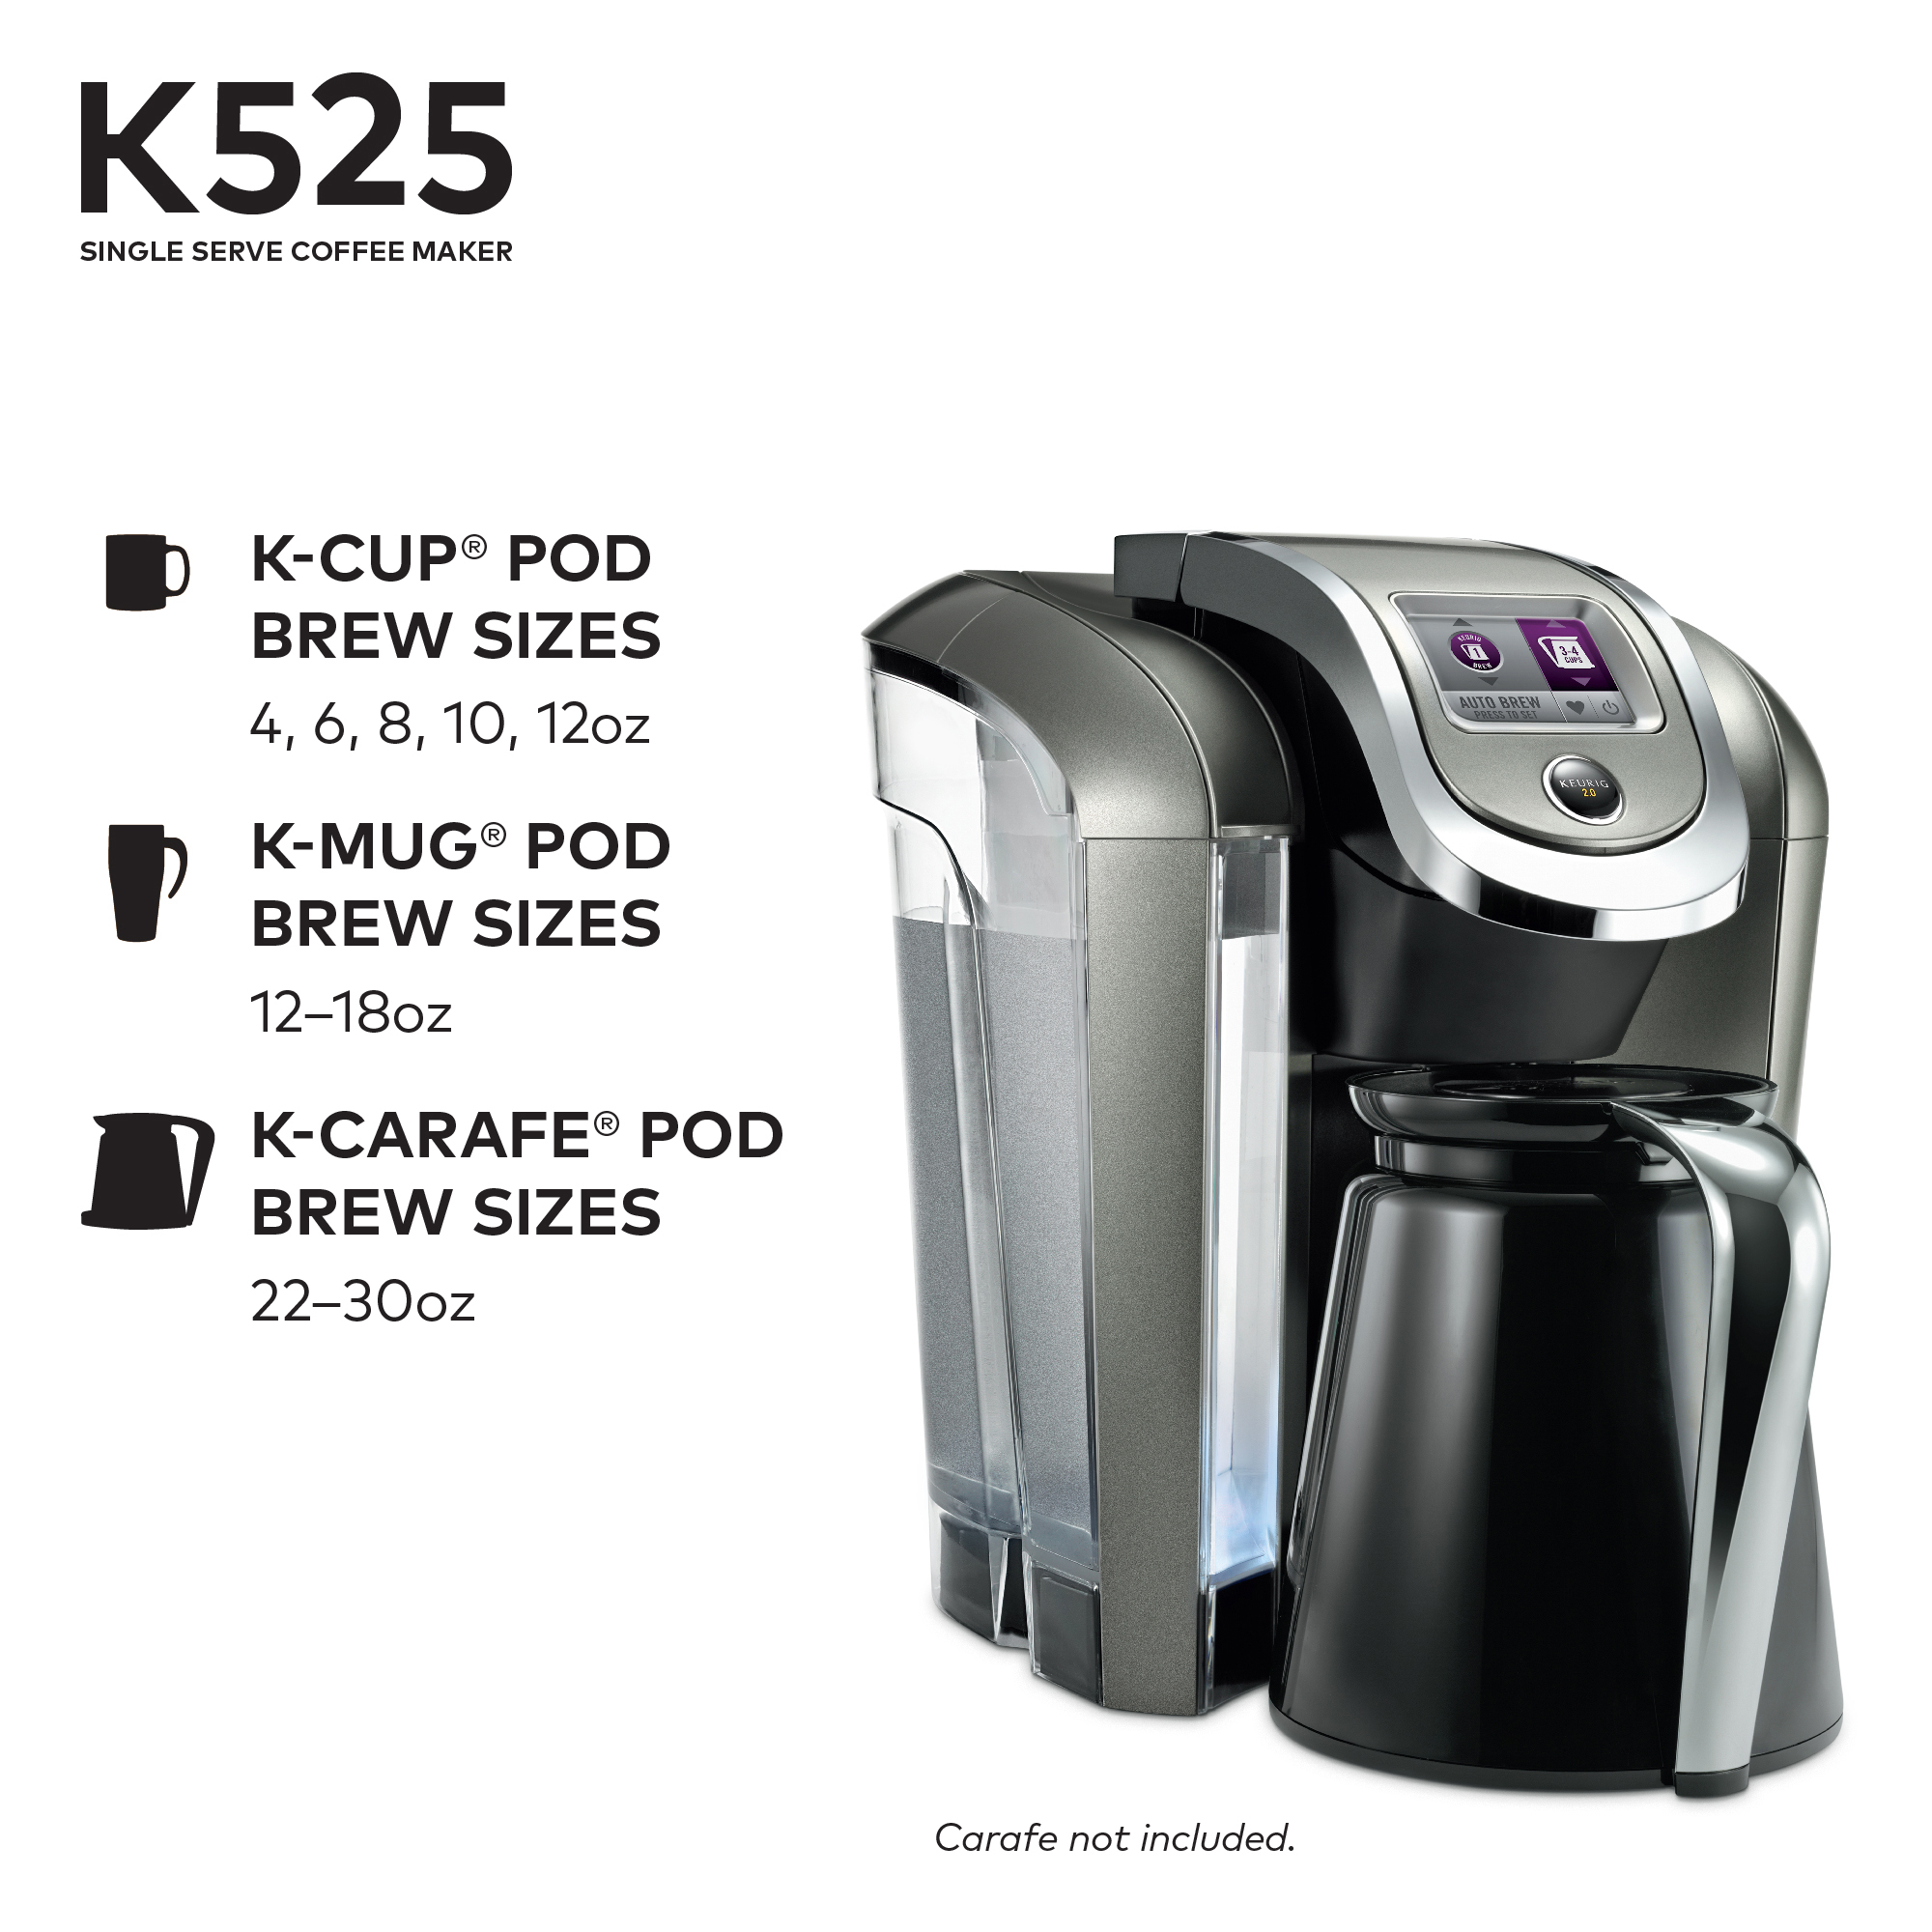 Keurig K525 Single Serve K-Cup Coffee Maker - image 5 of 11